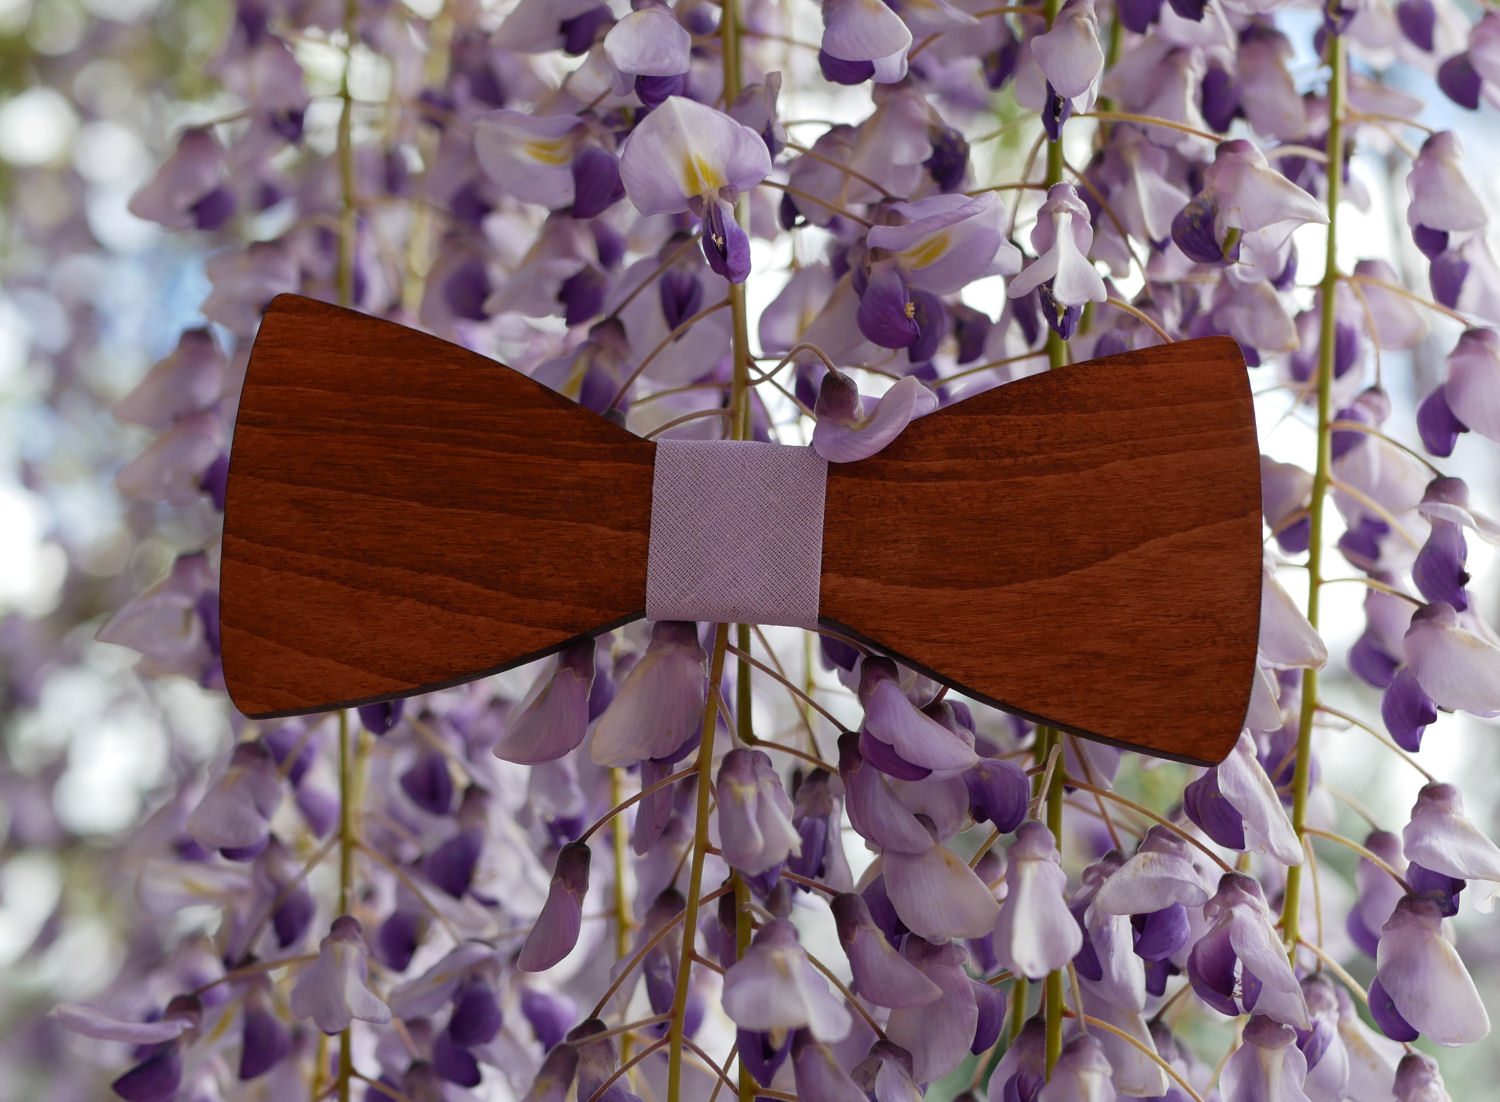 Walnut wood bow tie